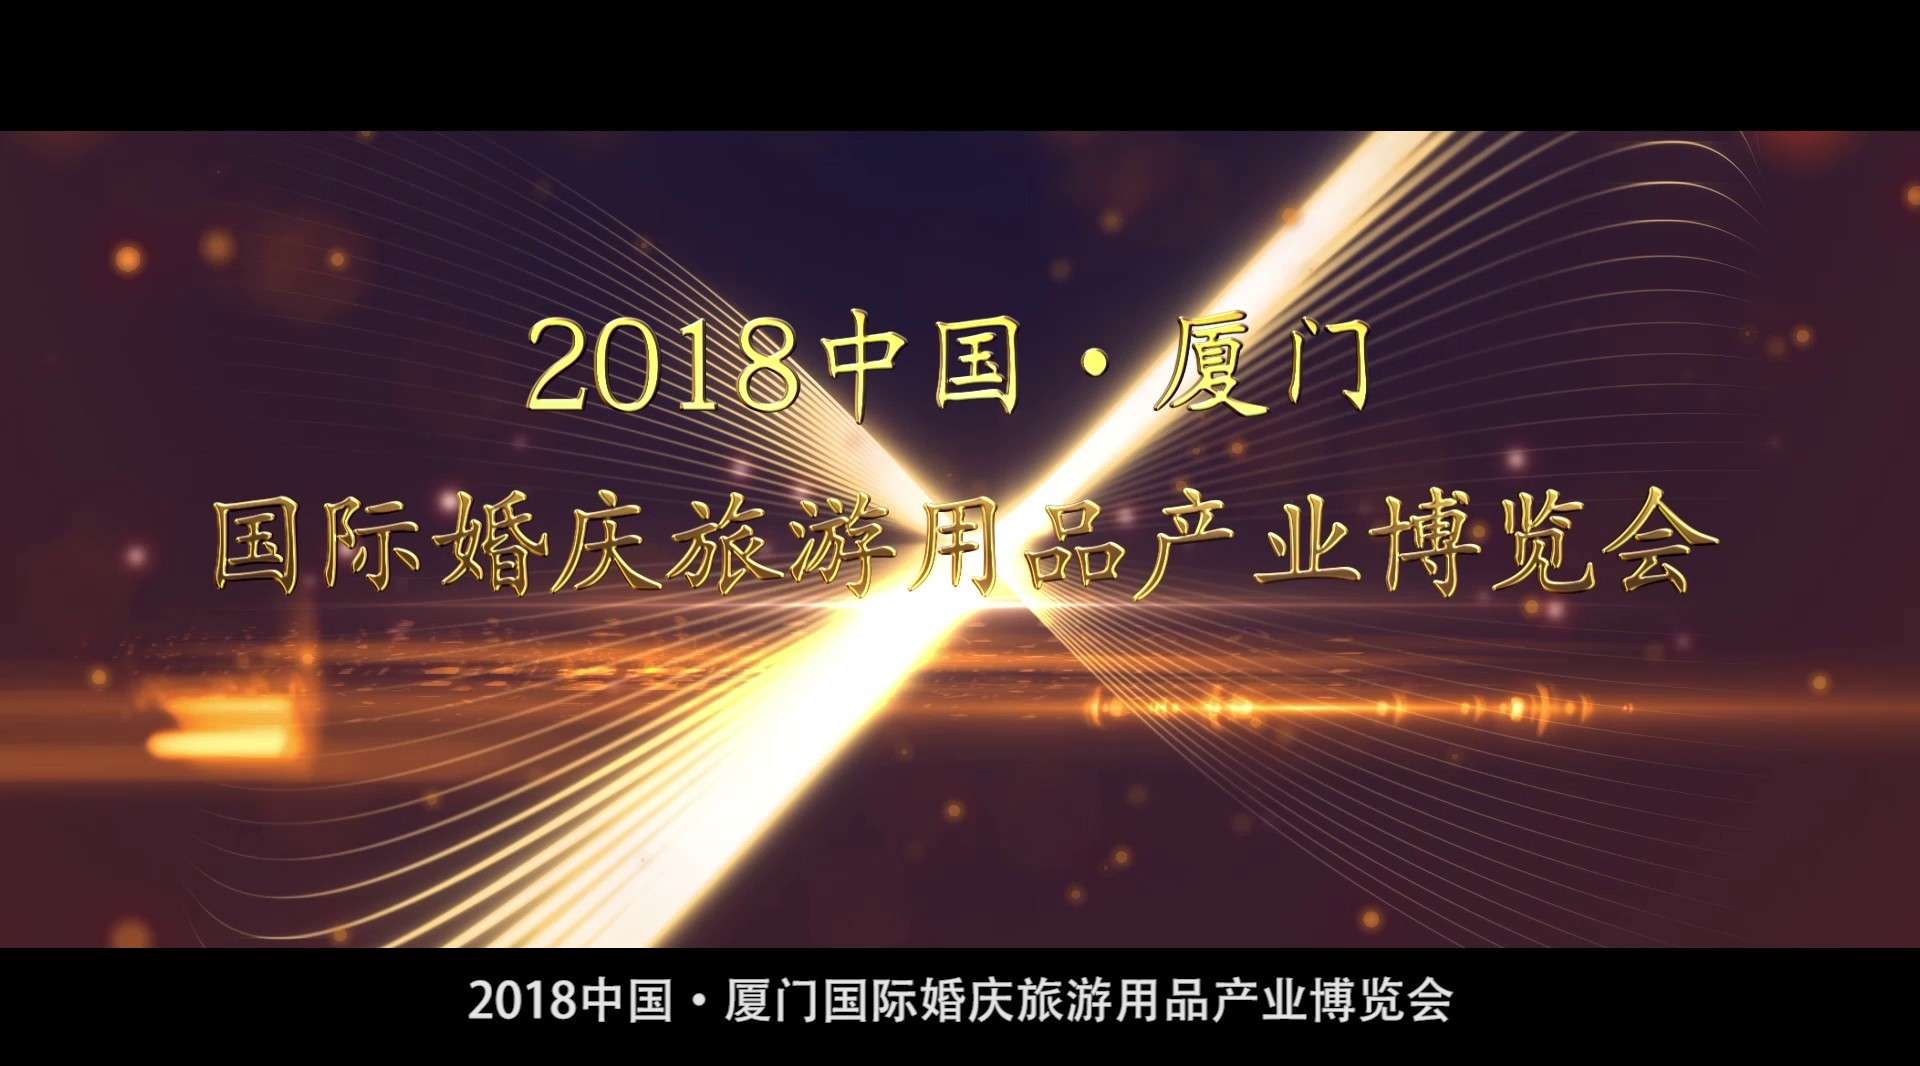 2018中国·厦门国际婚庆旅游用品产业博览会形象宣传片